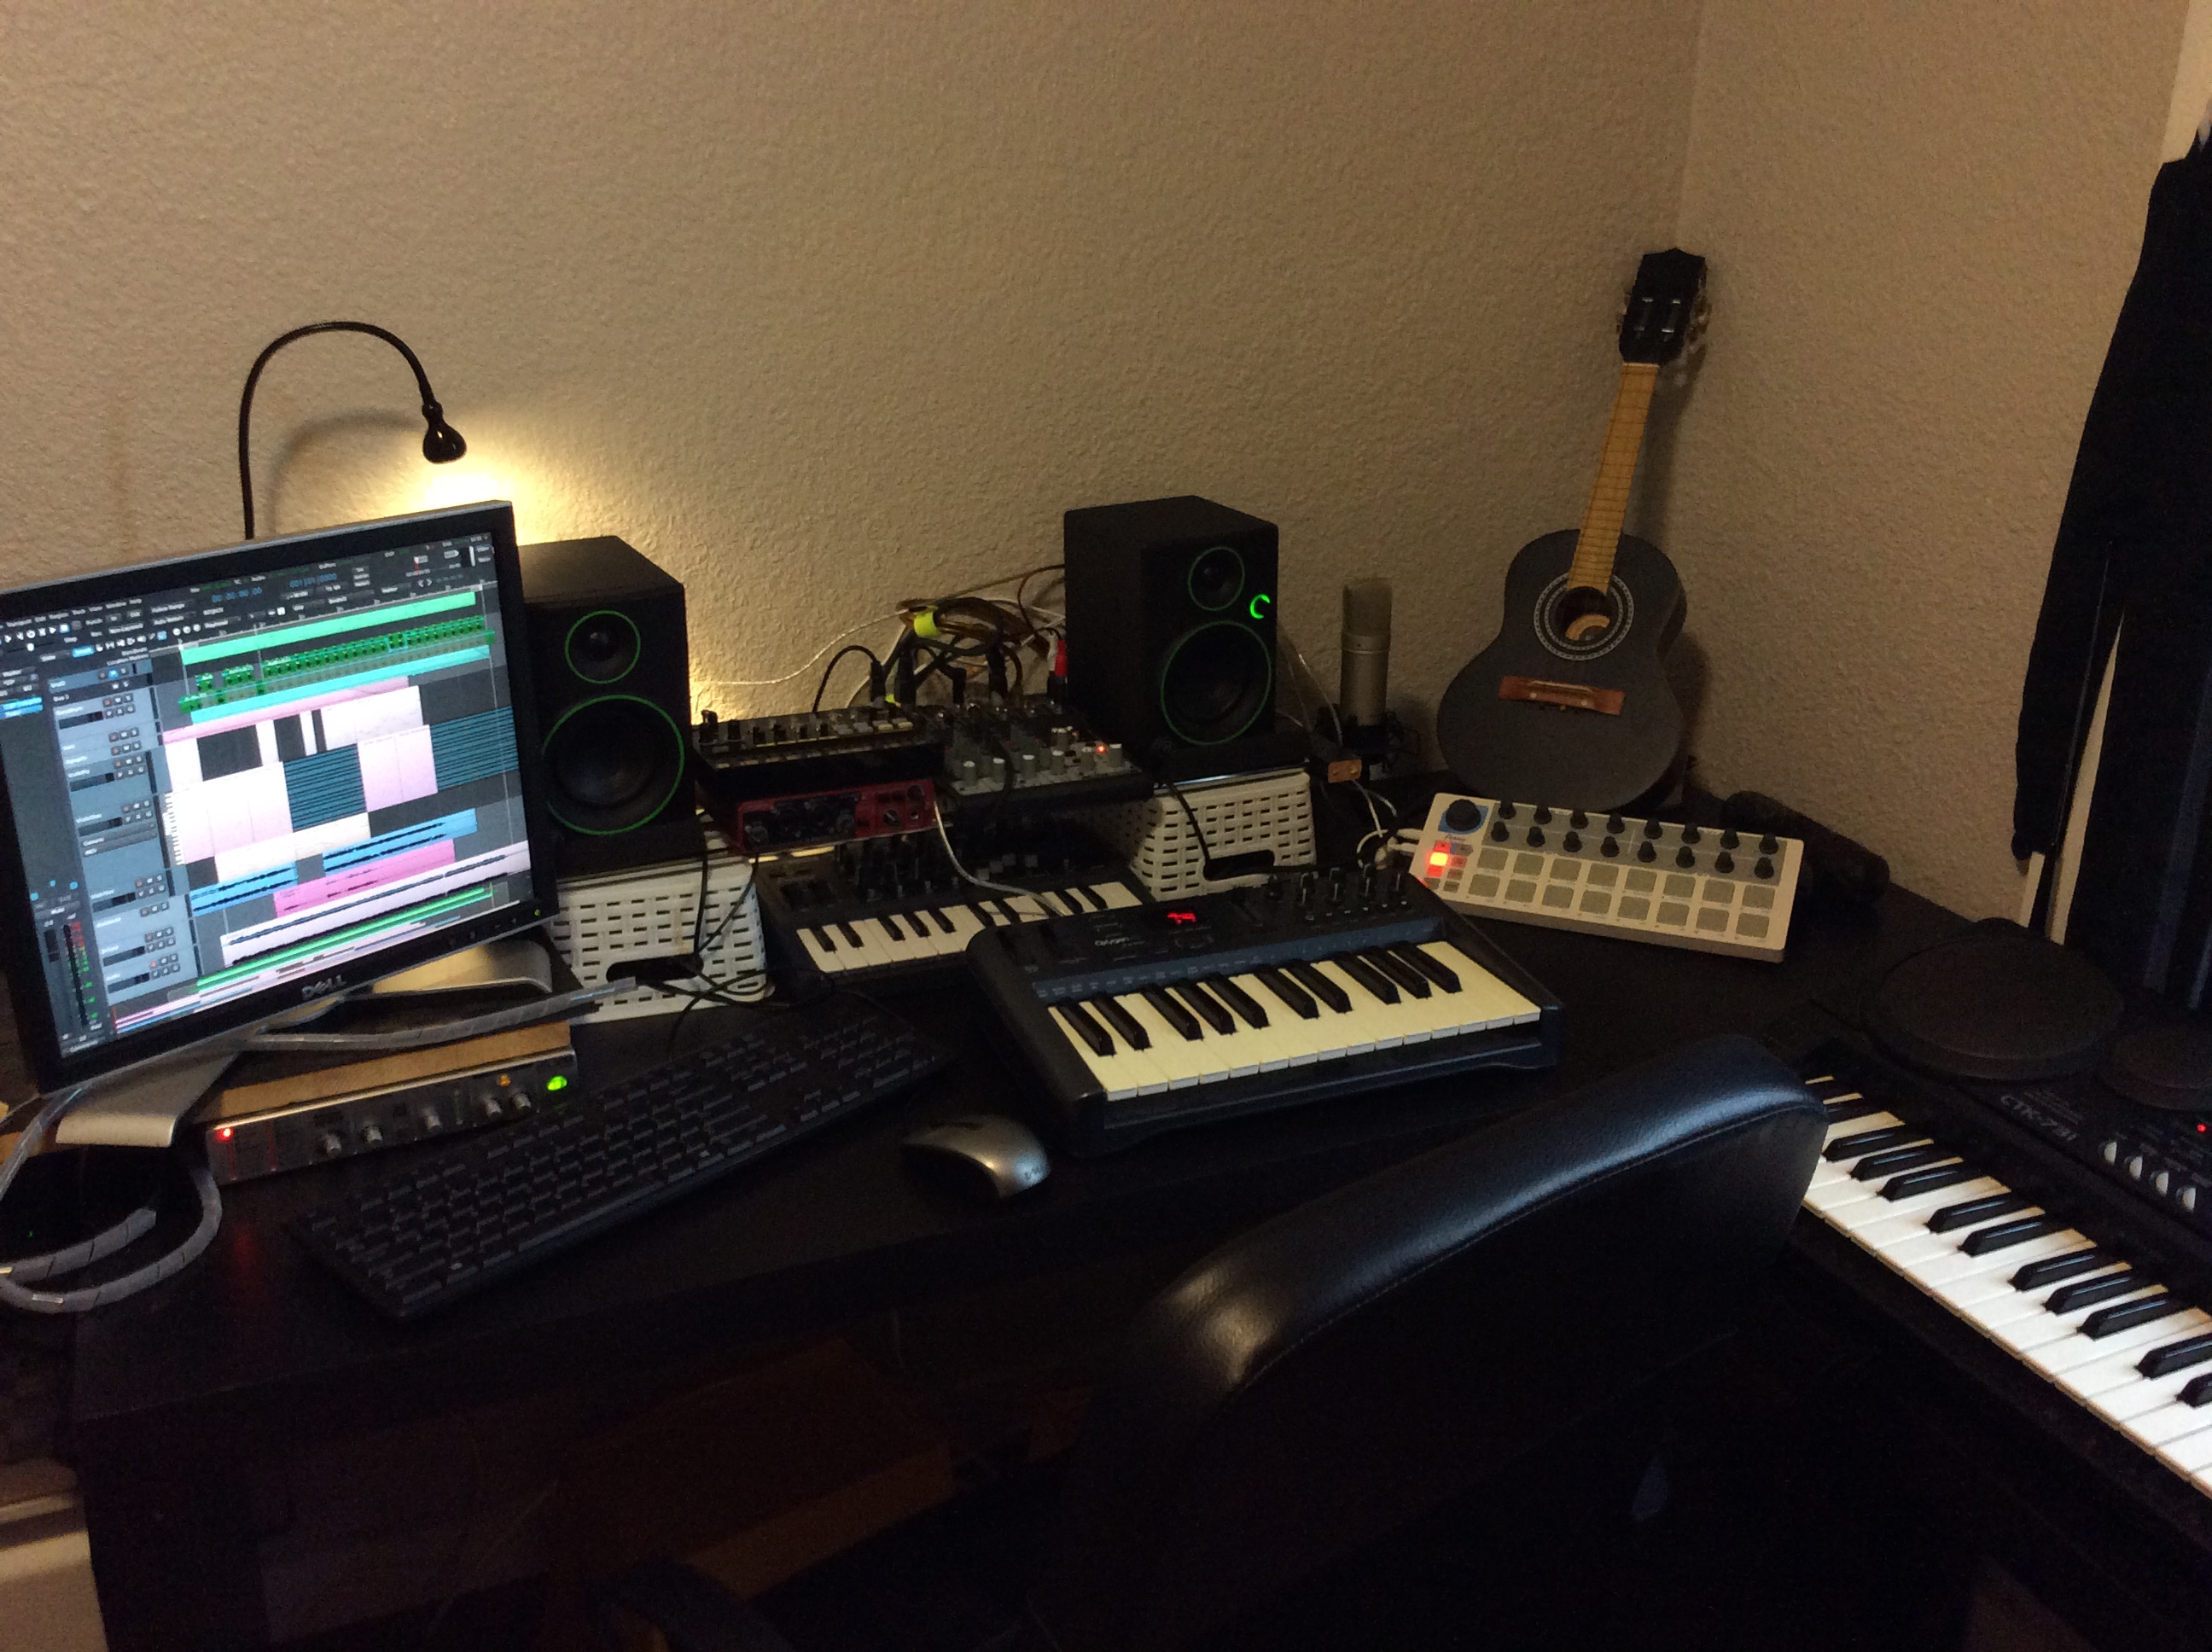 My new studio set-up!